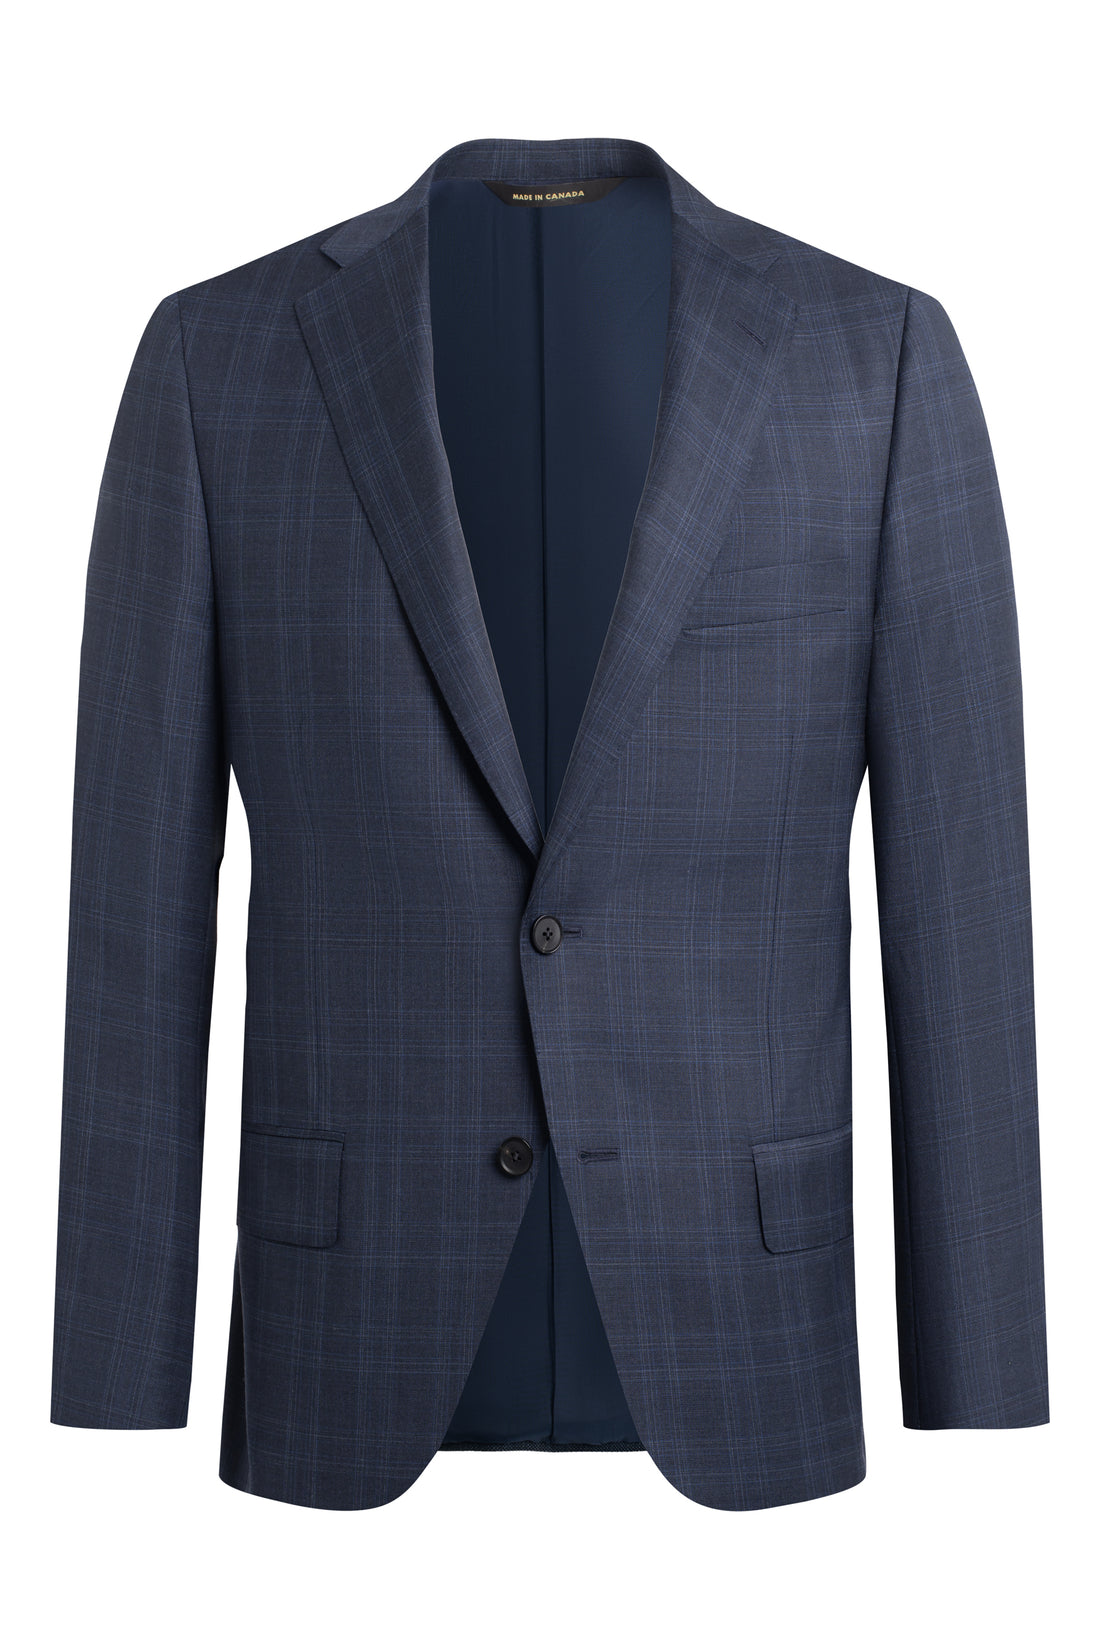 Navy Glen Plaid 150s Suit jacket front